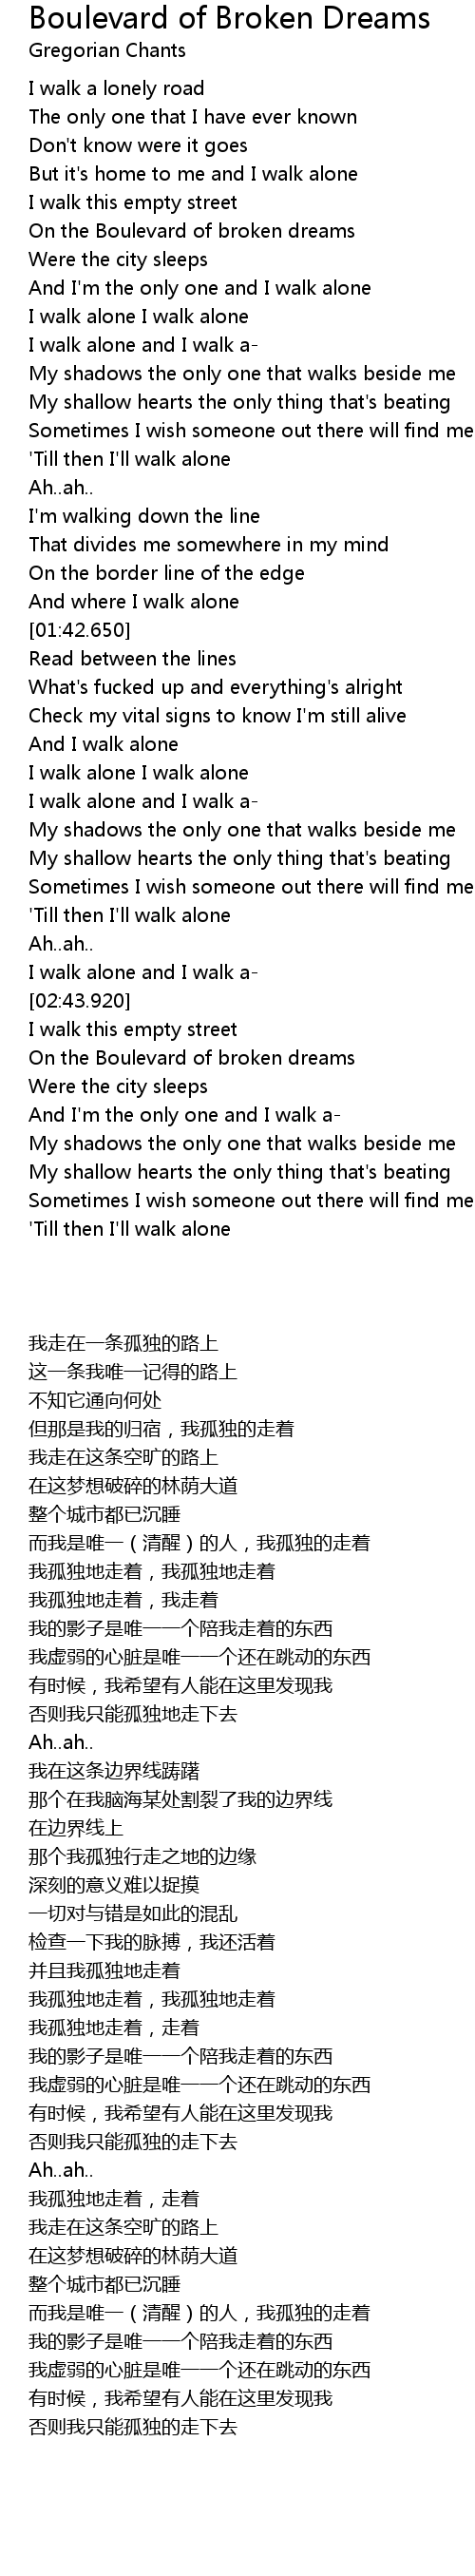 Of dreams boulevard lyrics broken